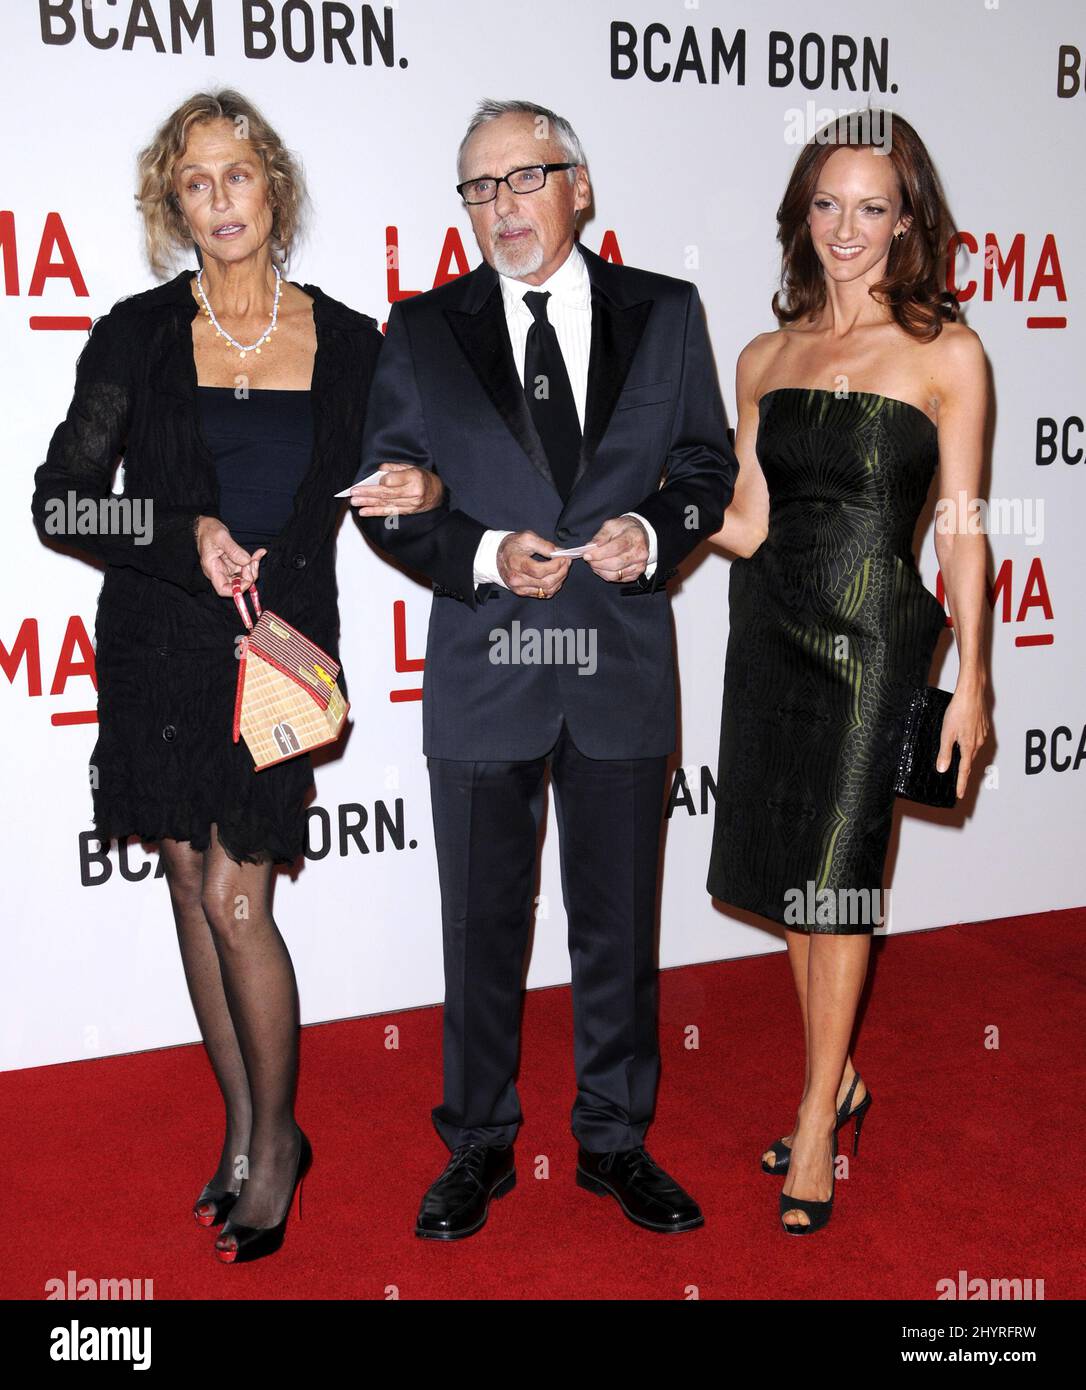 Lauren Hutton, Dennis Hopper und Victoria Duffy nehmen an der Eröffnungsfeier des Broad Contemporary Art Museum an der LACMA in Los Angeles, CA, Teil. Stockfoto